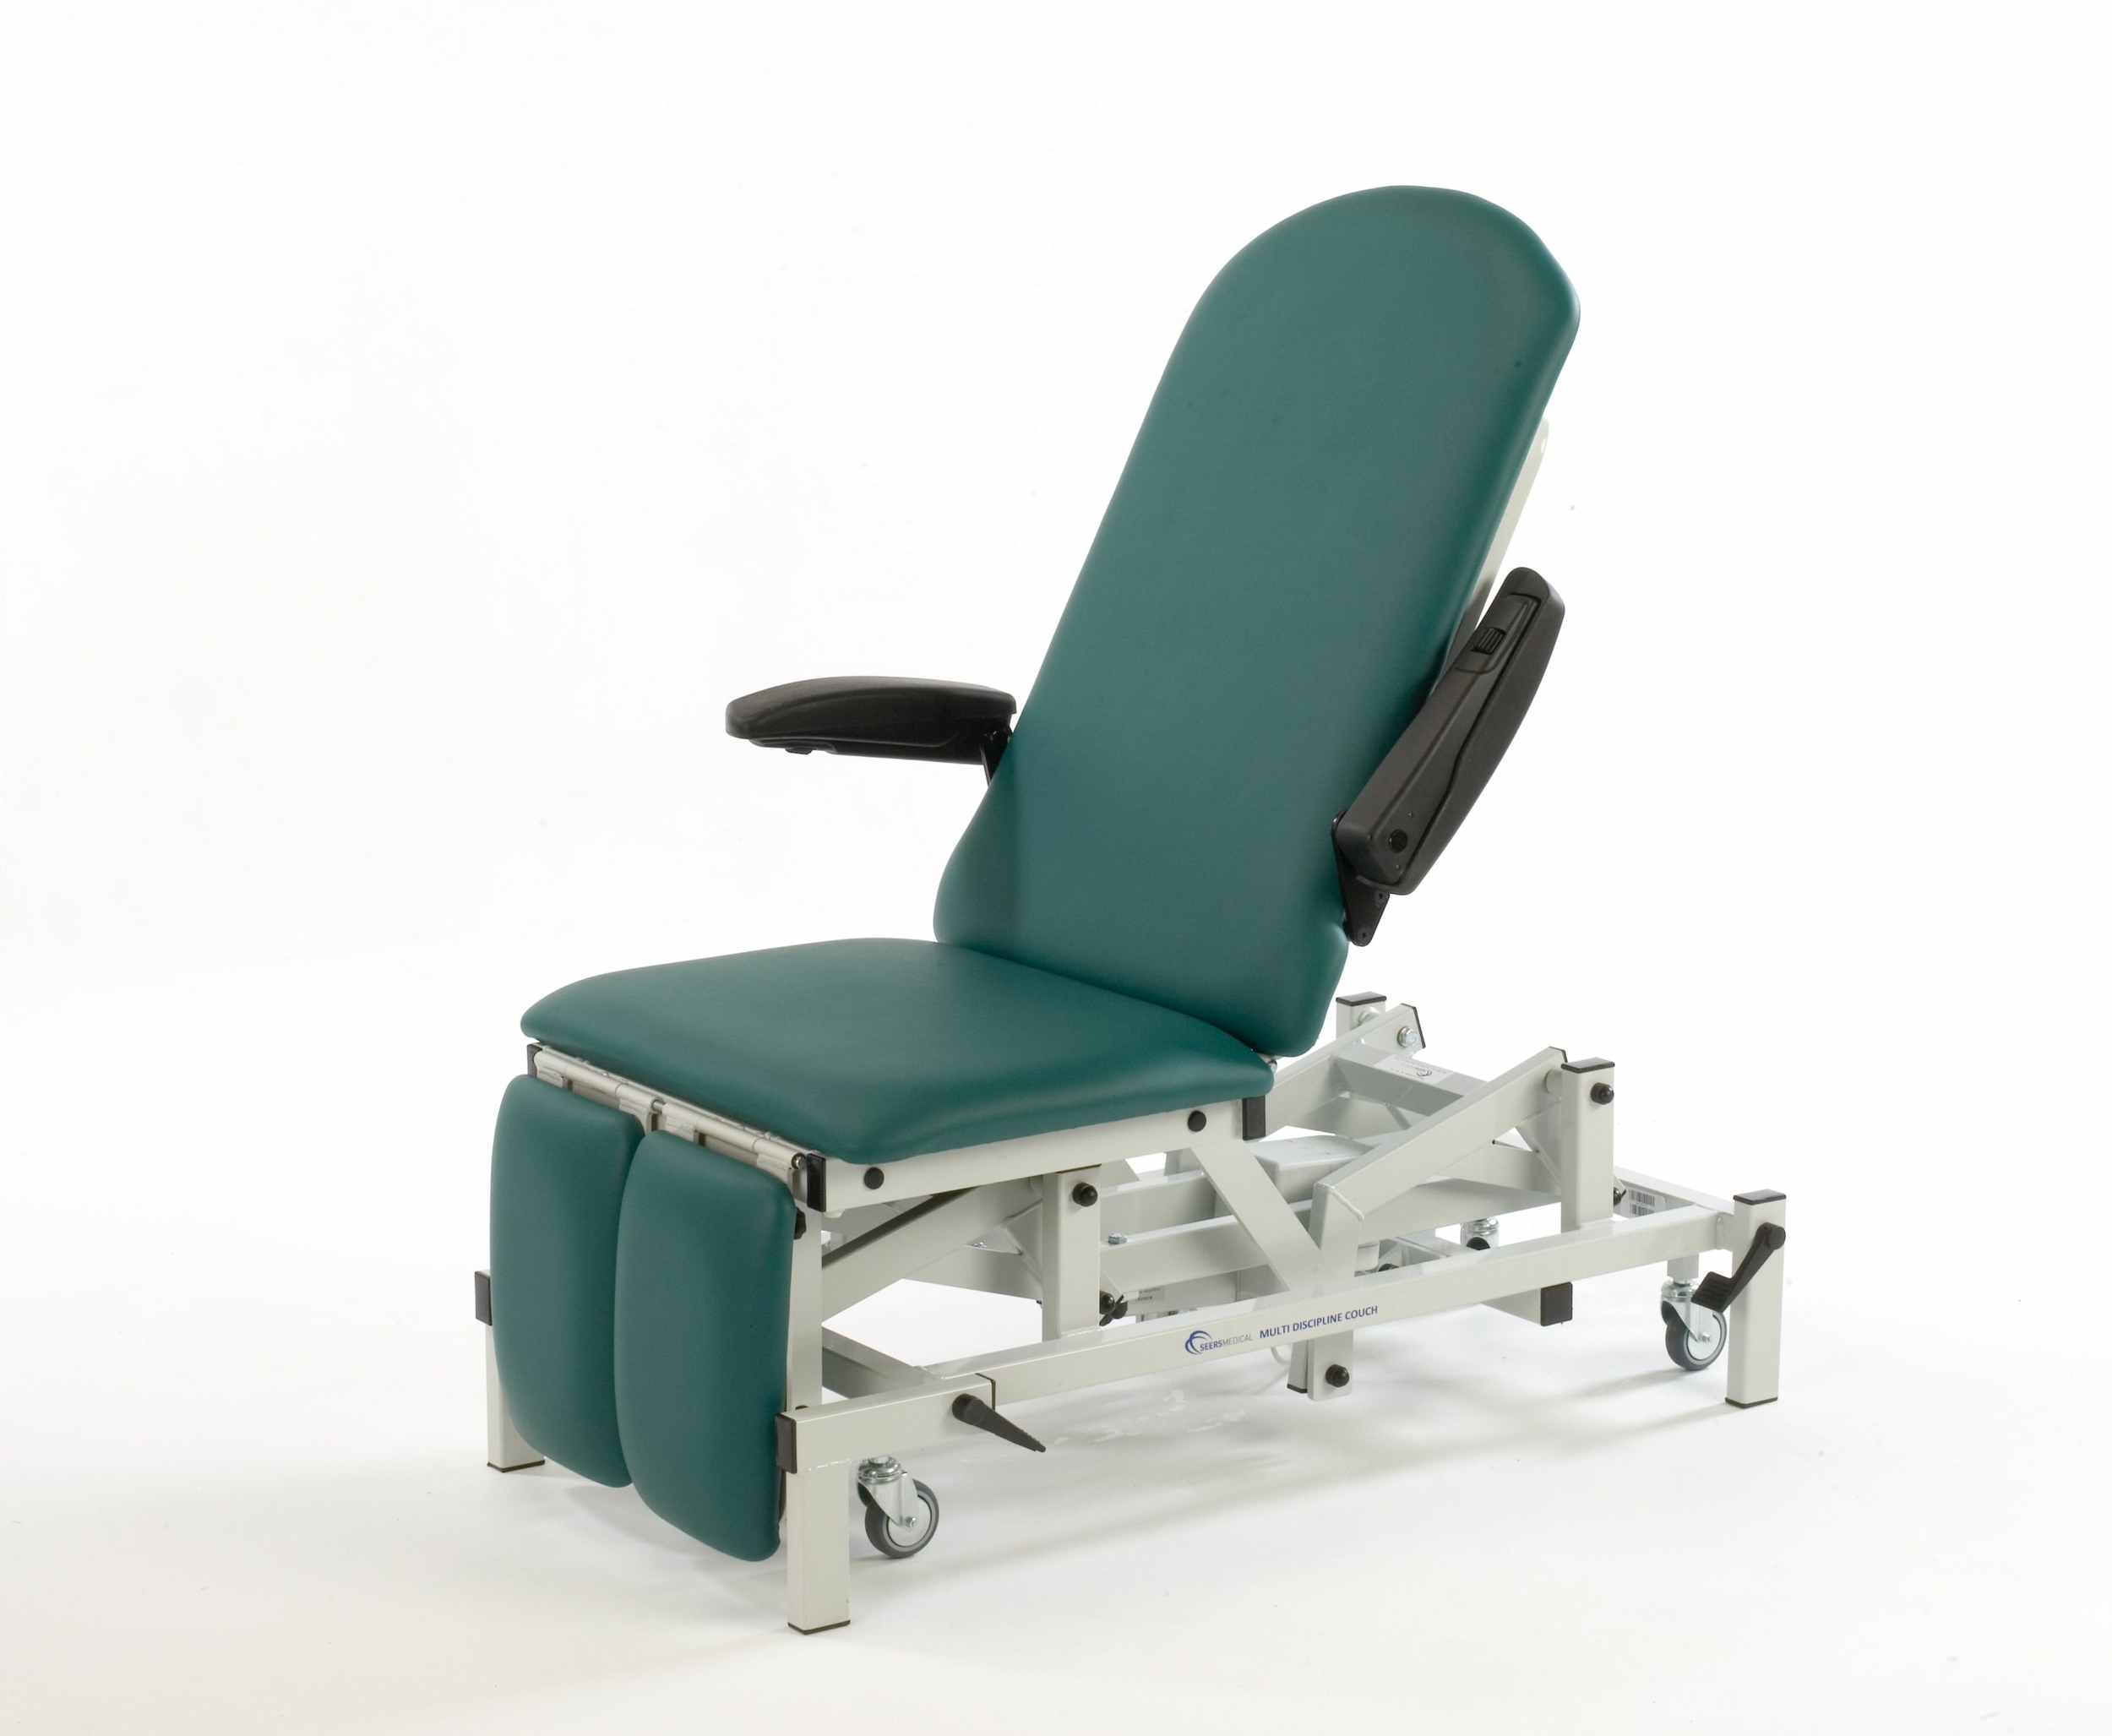 seers medical fauteuil de podologie électrique SM0575 vert tablelya accès facile assise basse